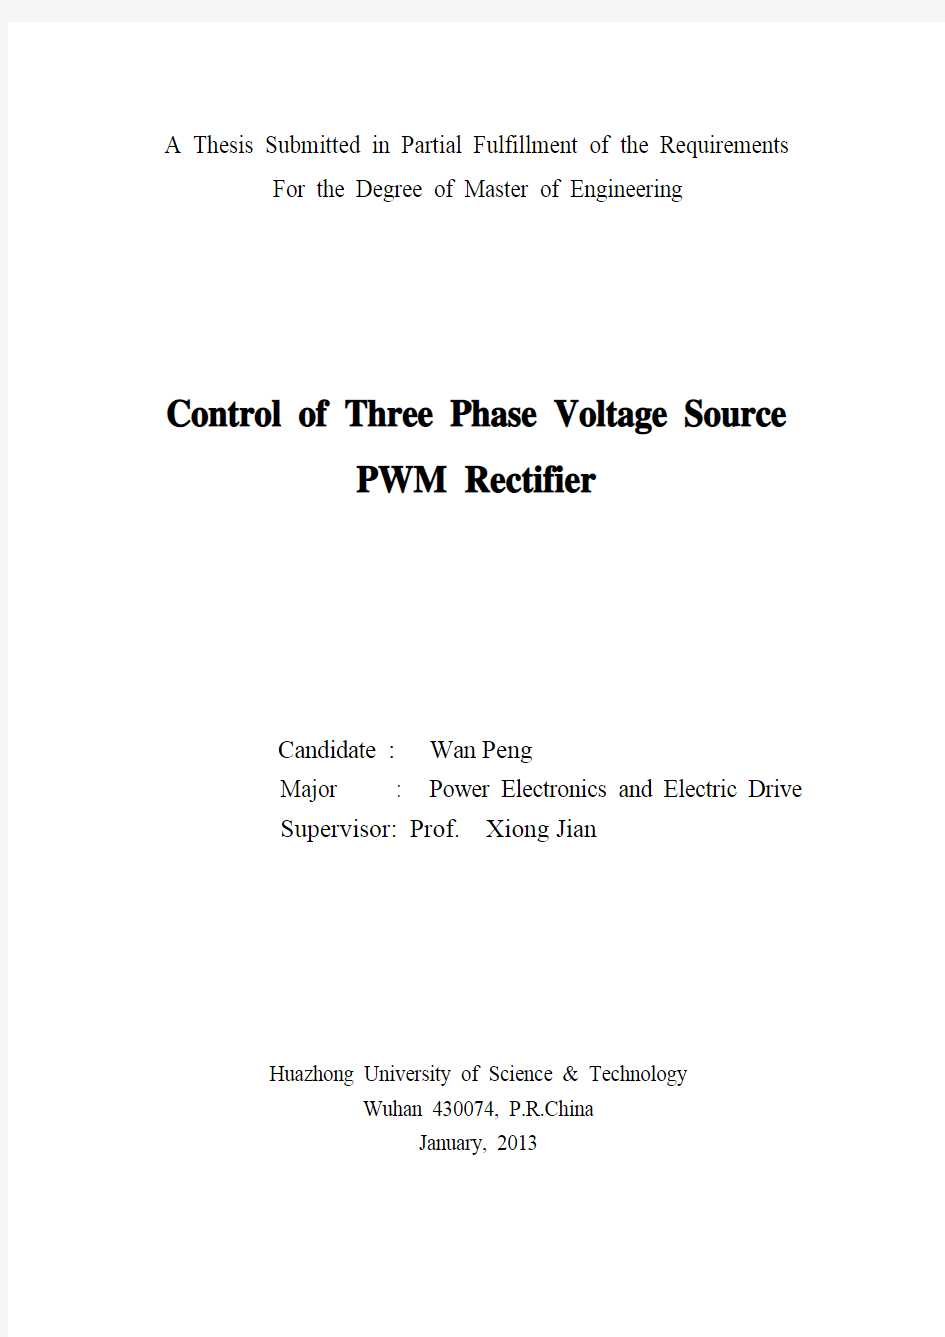 三相电压型PWM整流器控制